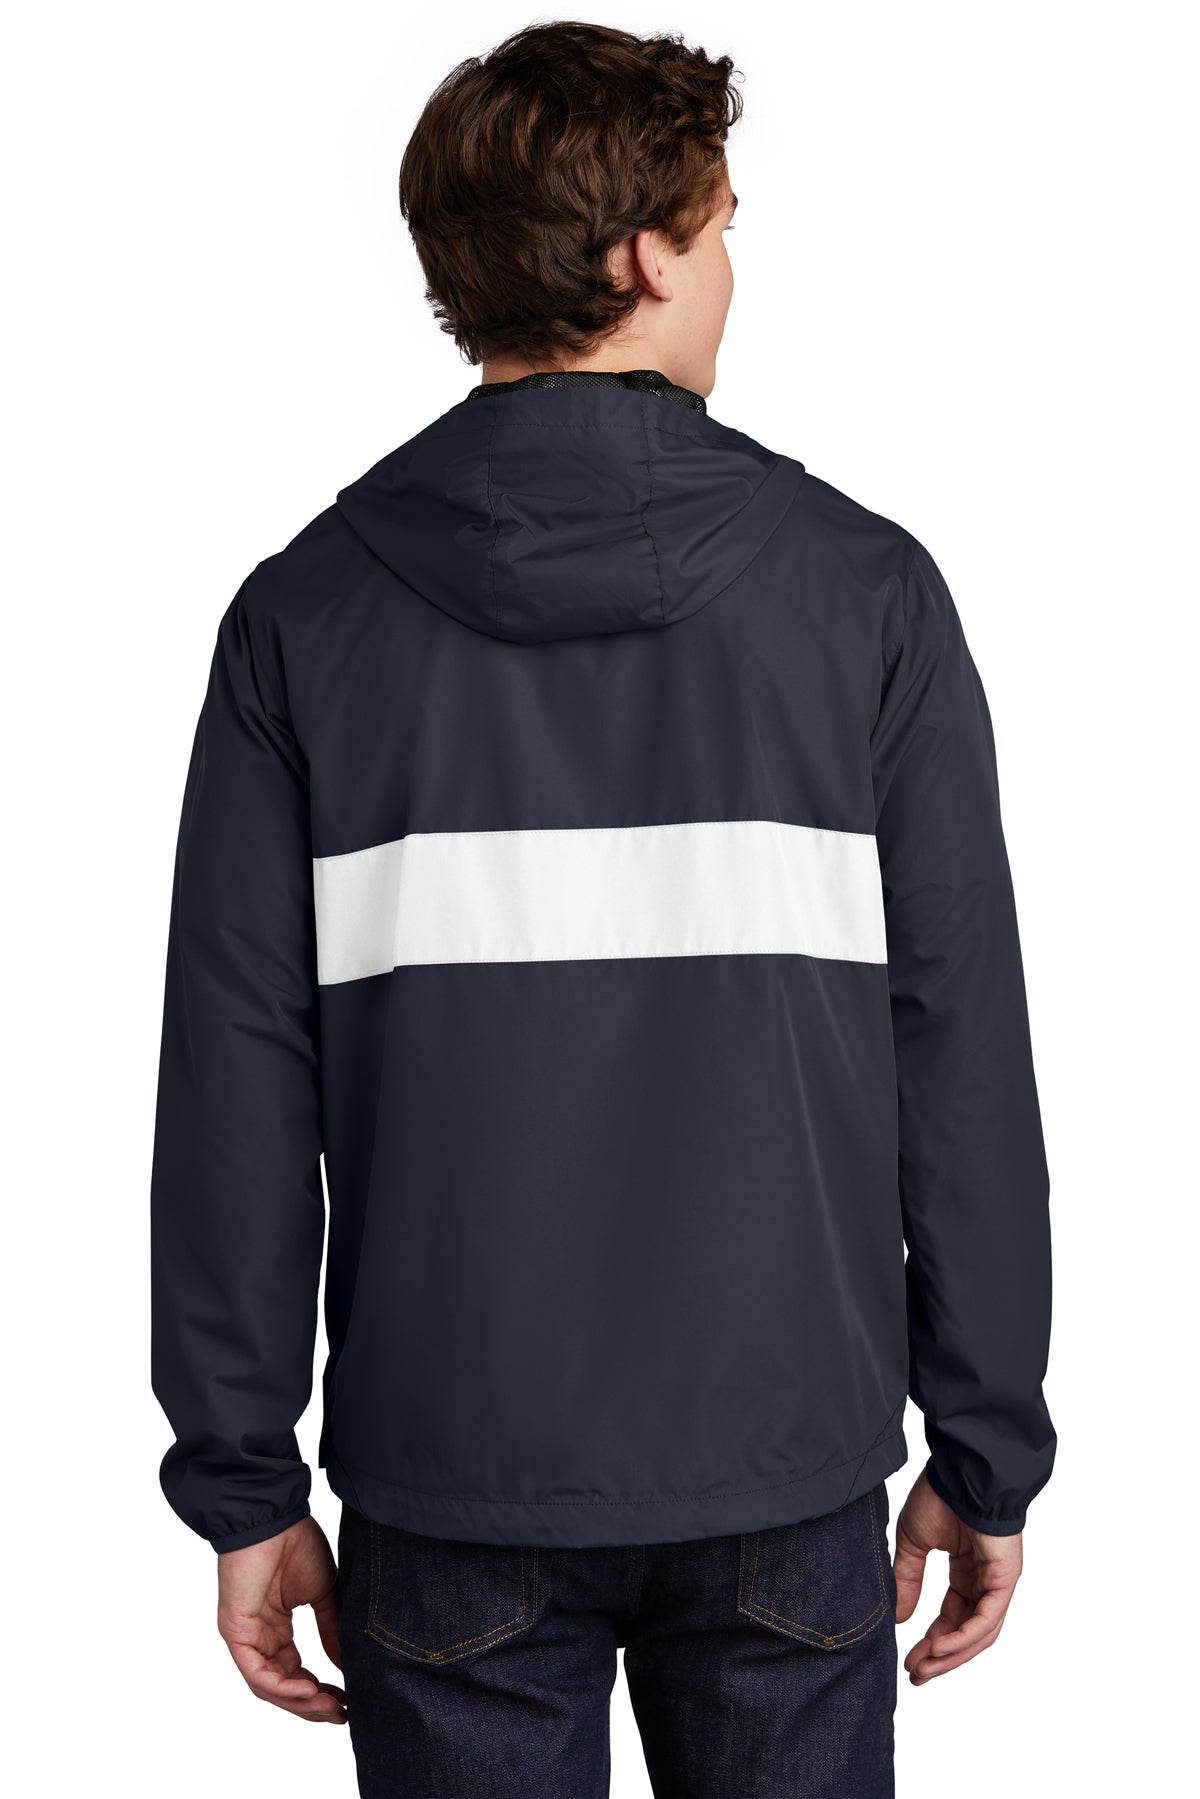 sport-tek_jst65 _true navy/ white_company_logo_jackets